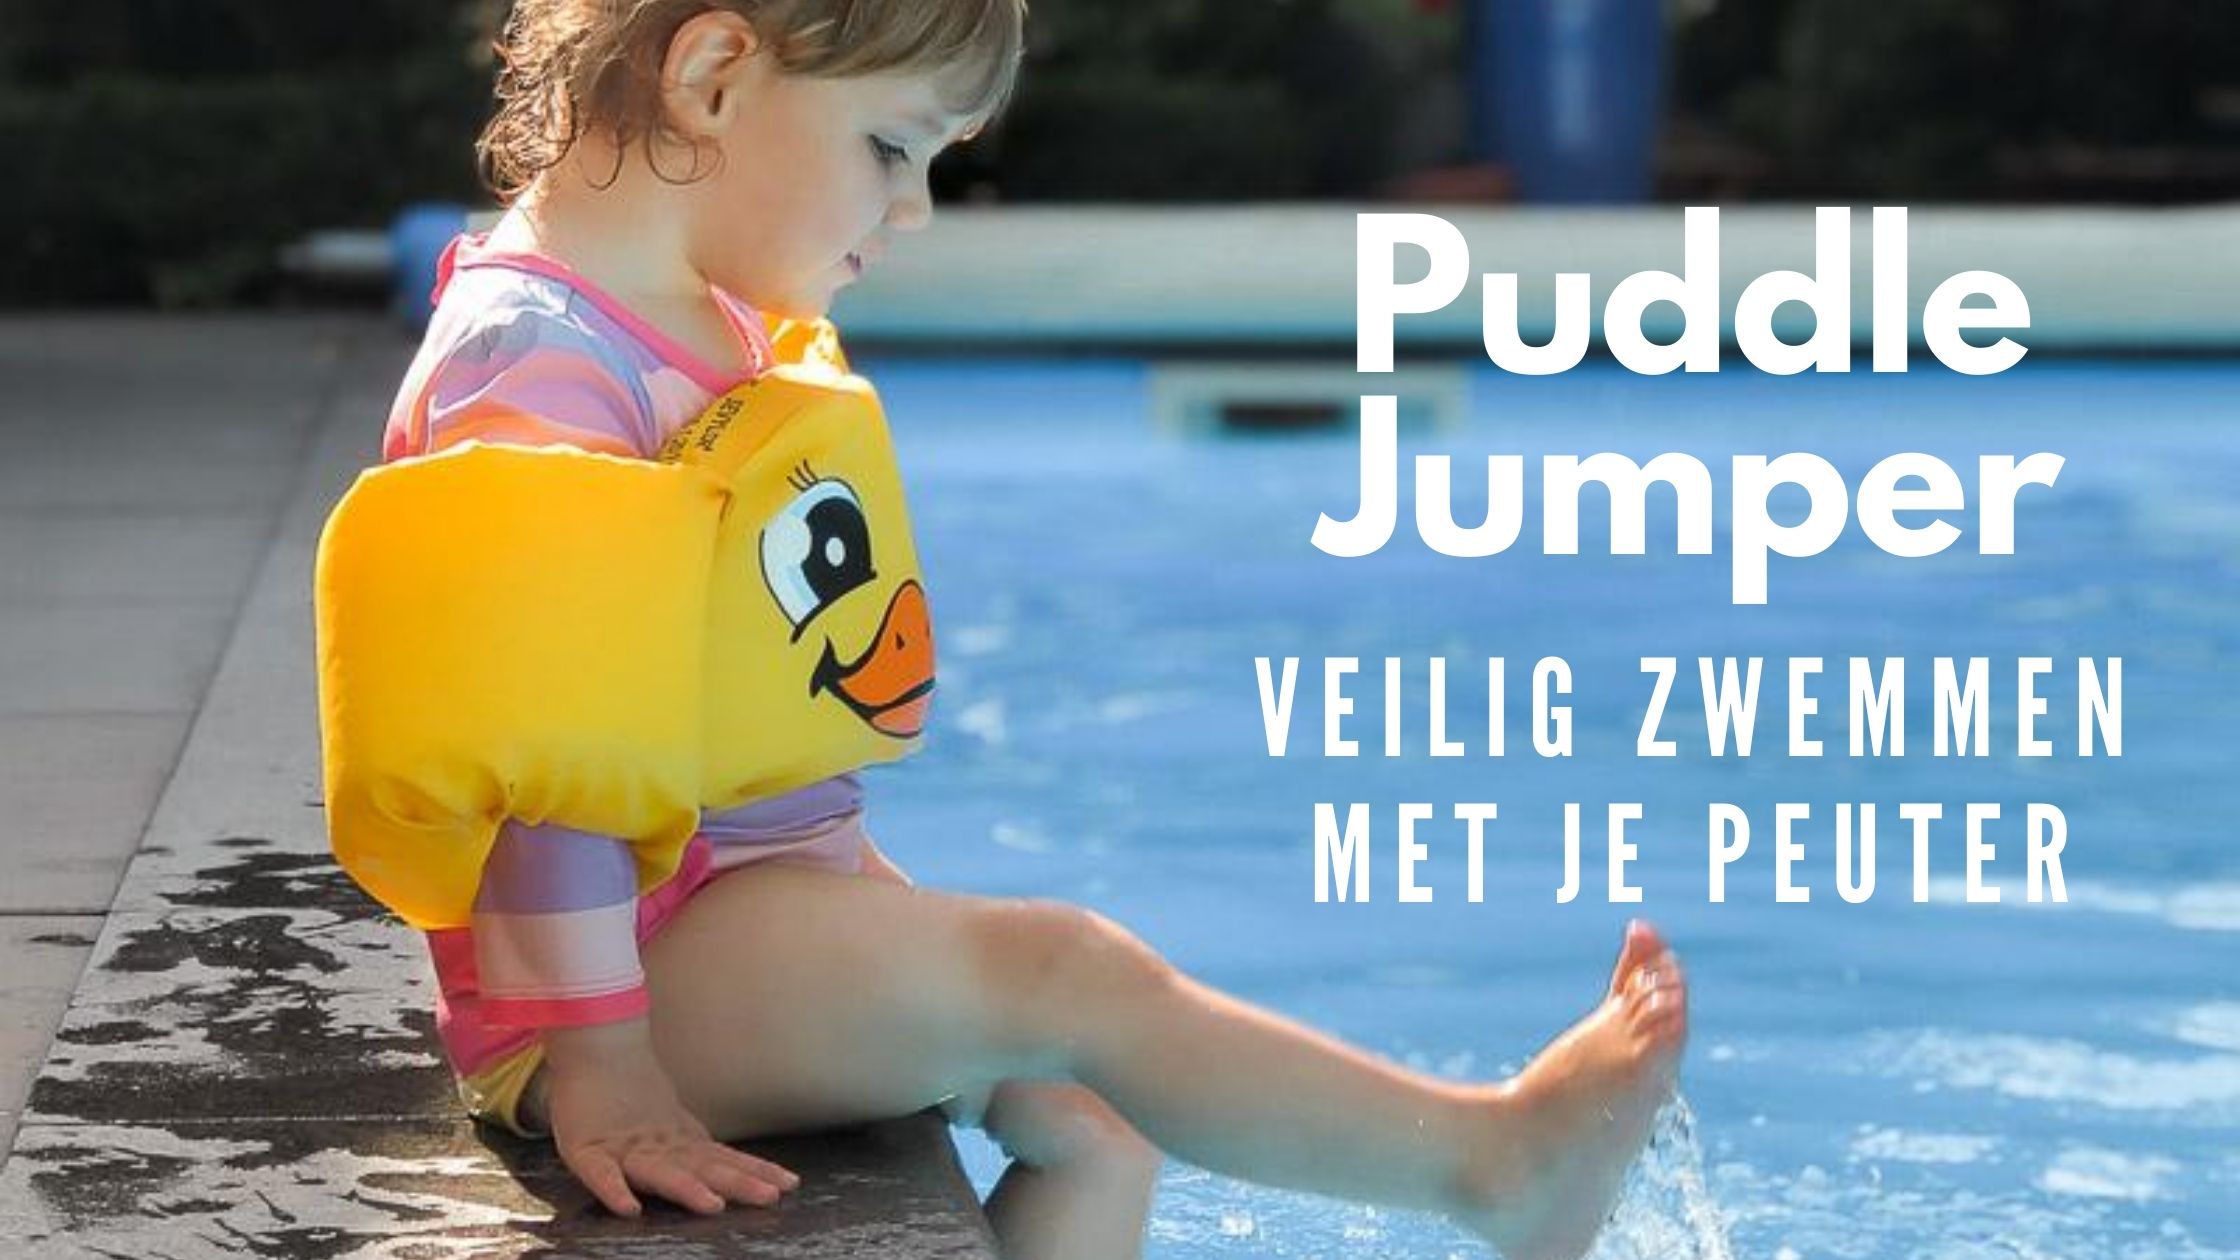 veilig zwemmen met je peuter: de puddle jumper